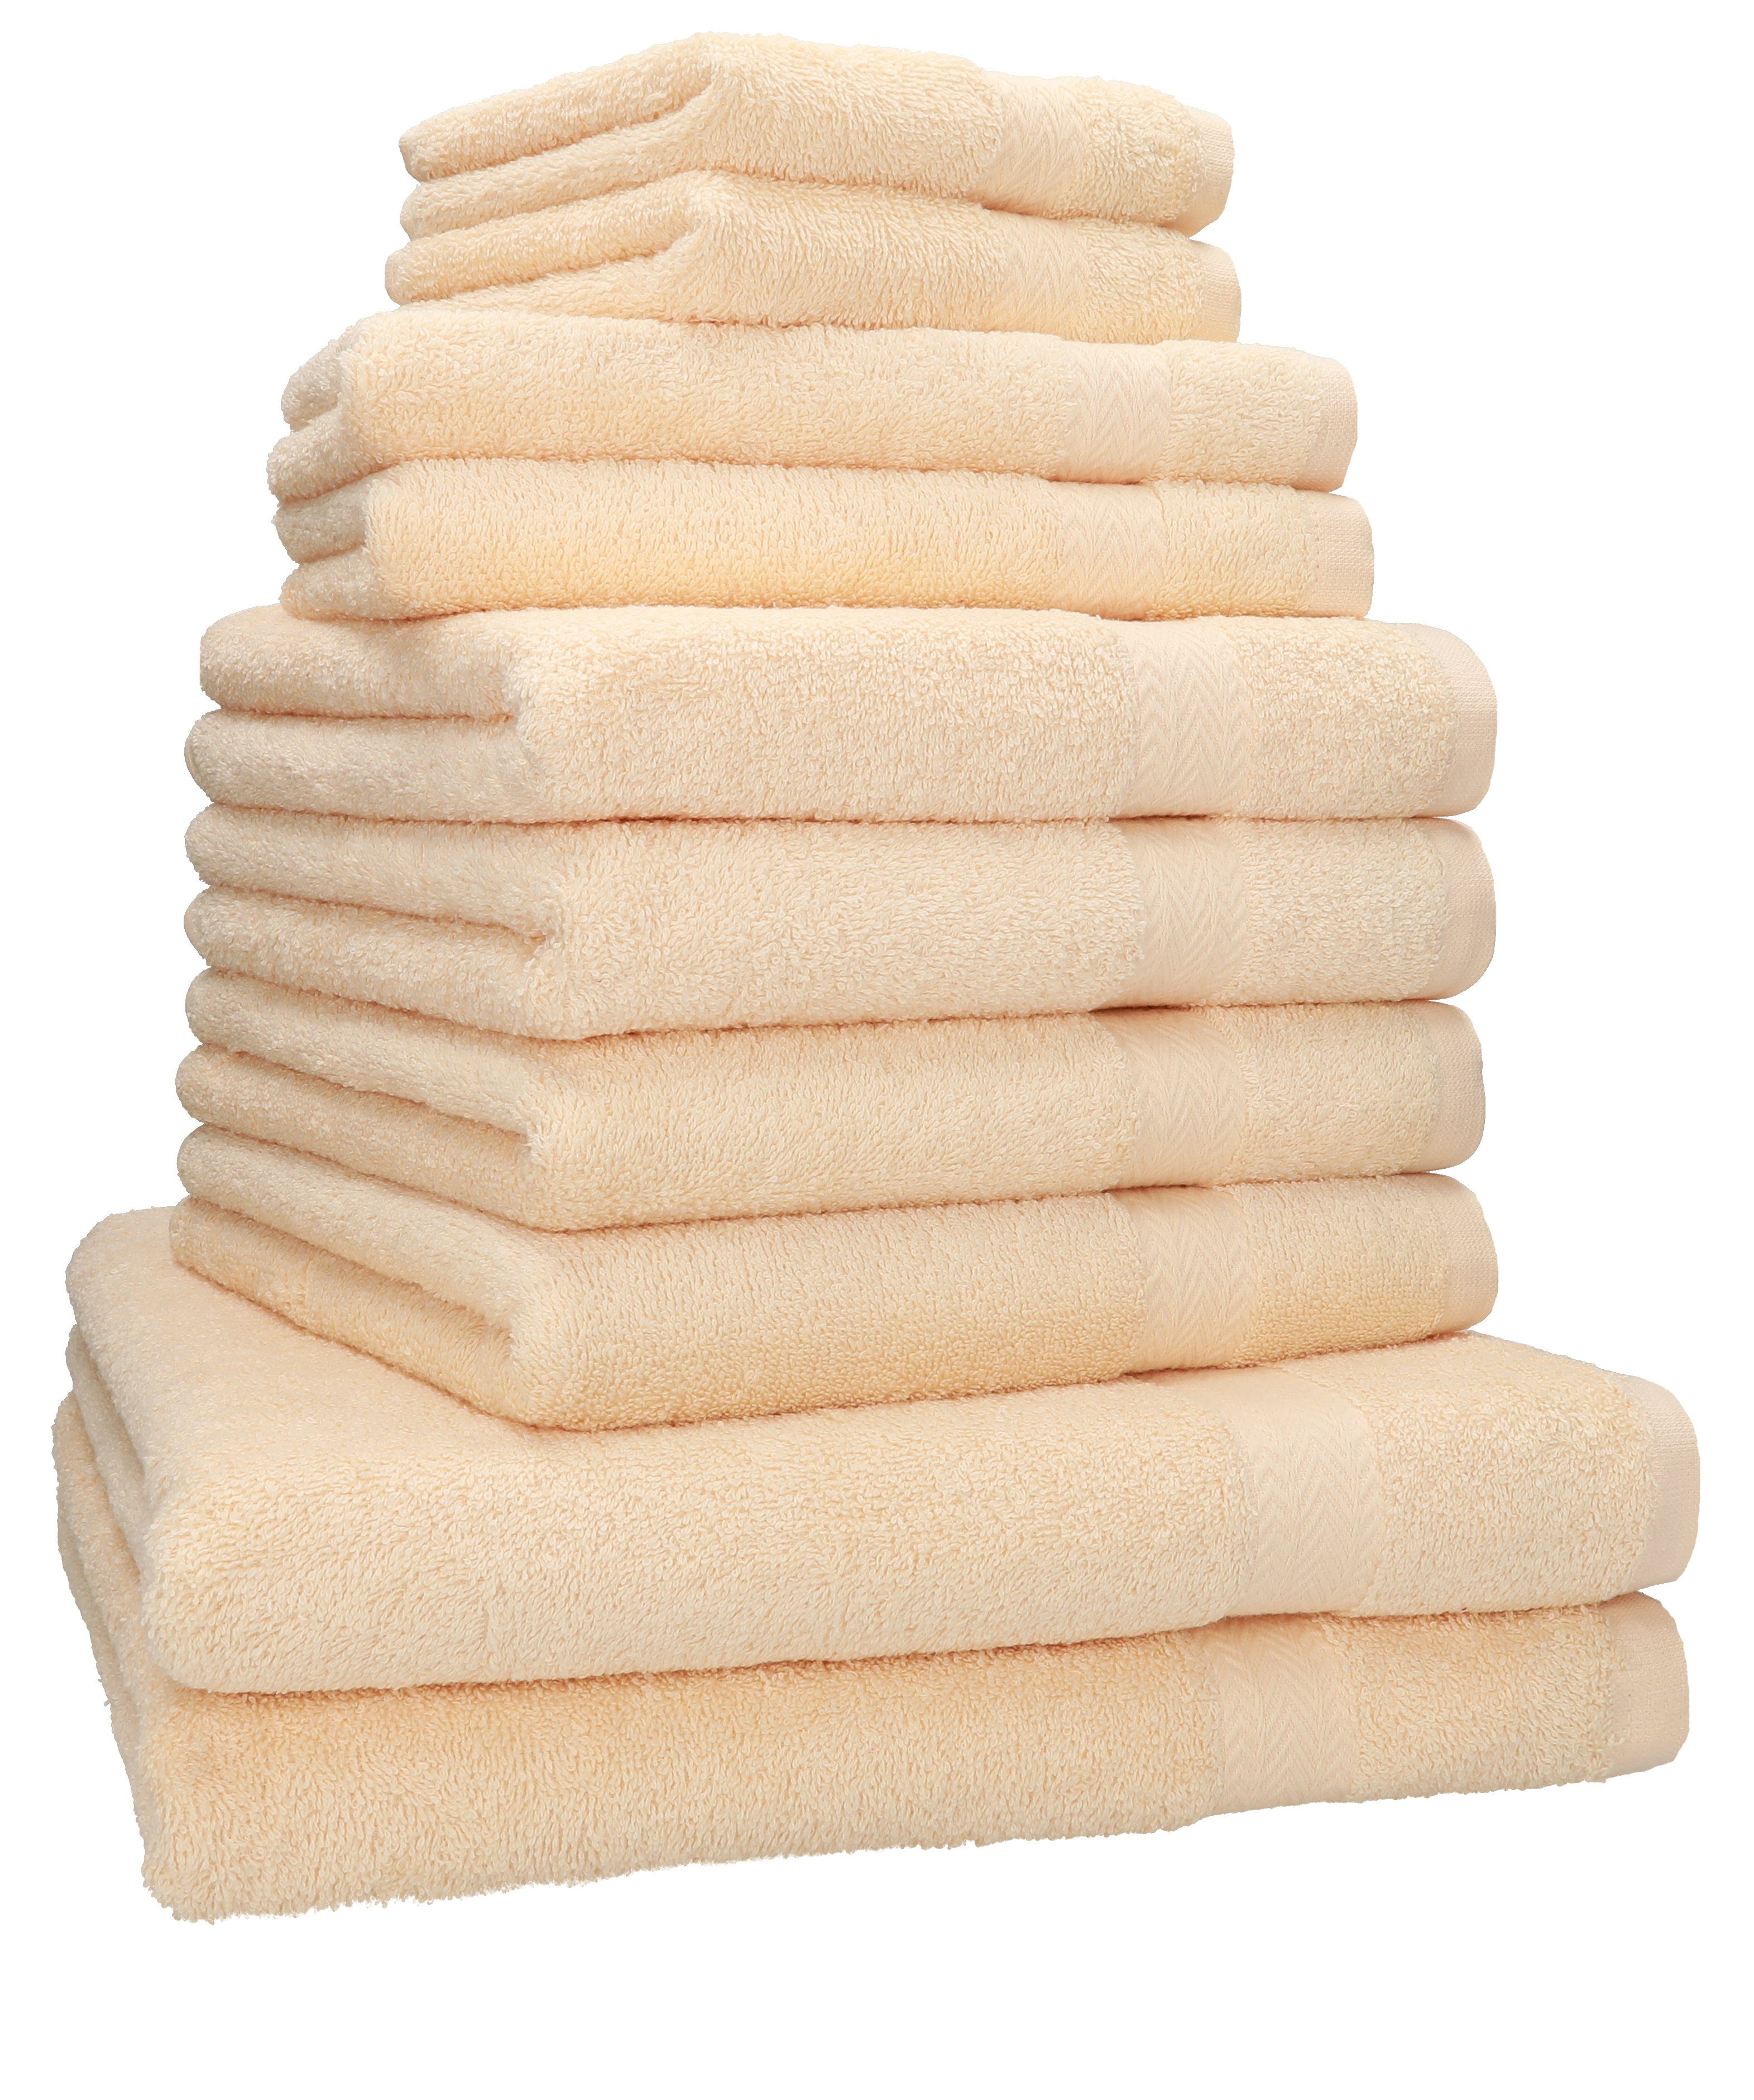 Betz Handtuch Set 10-TLG. 2 2 2 (10-tlg) Classic Handtuch-Set Baumwolle, Handtücher Baumwolle Duschtücher 4 100% Gästetücher Seiftücher, beige 100